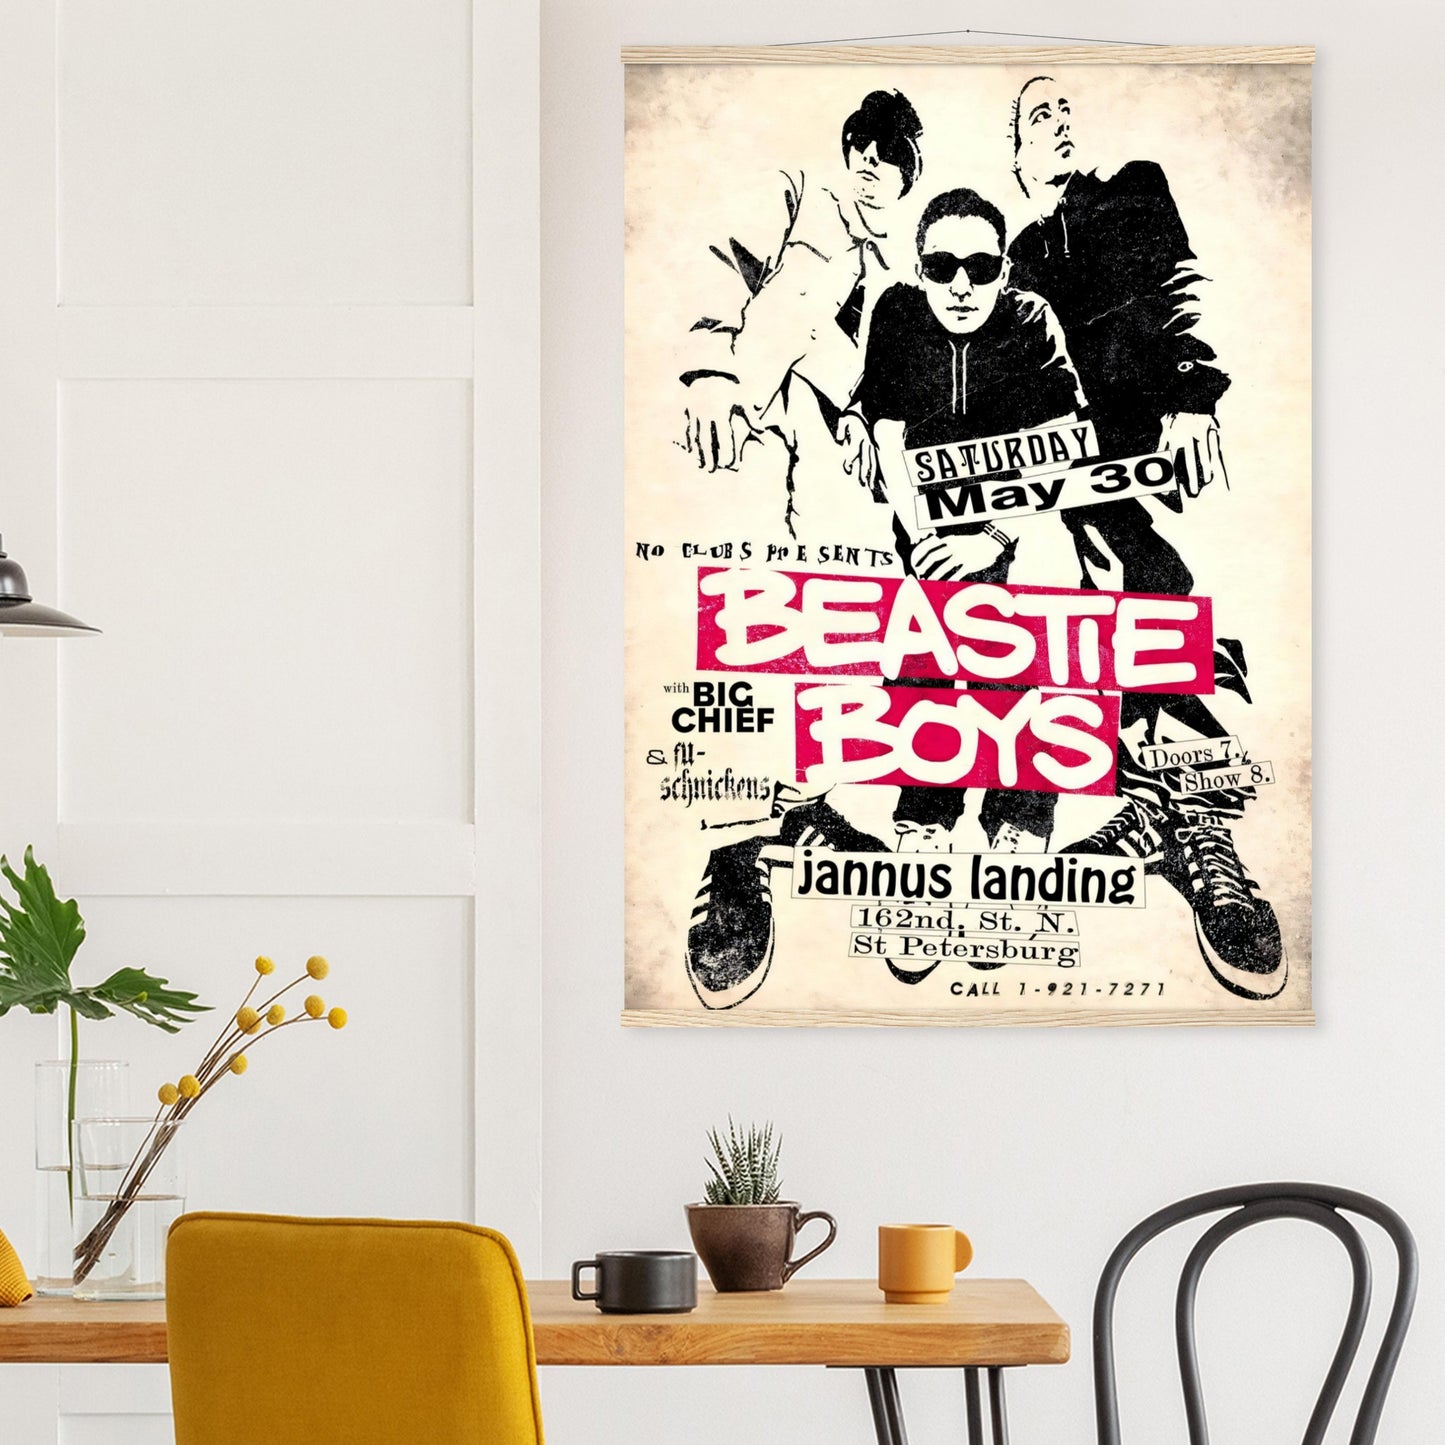 Bestie Boys Vintage Poster Reprint on Premium Matte Paper - Posterify